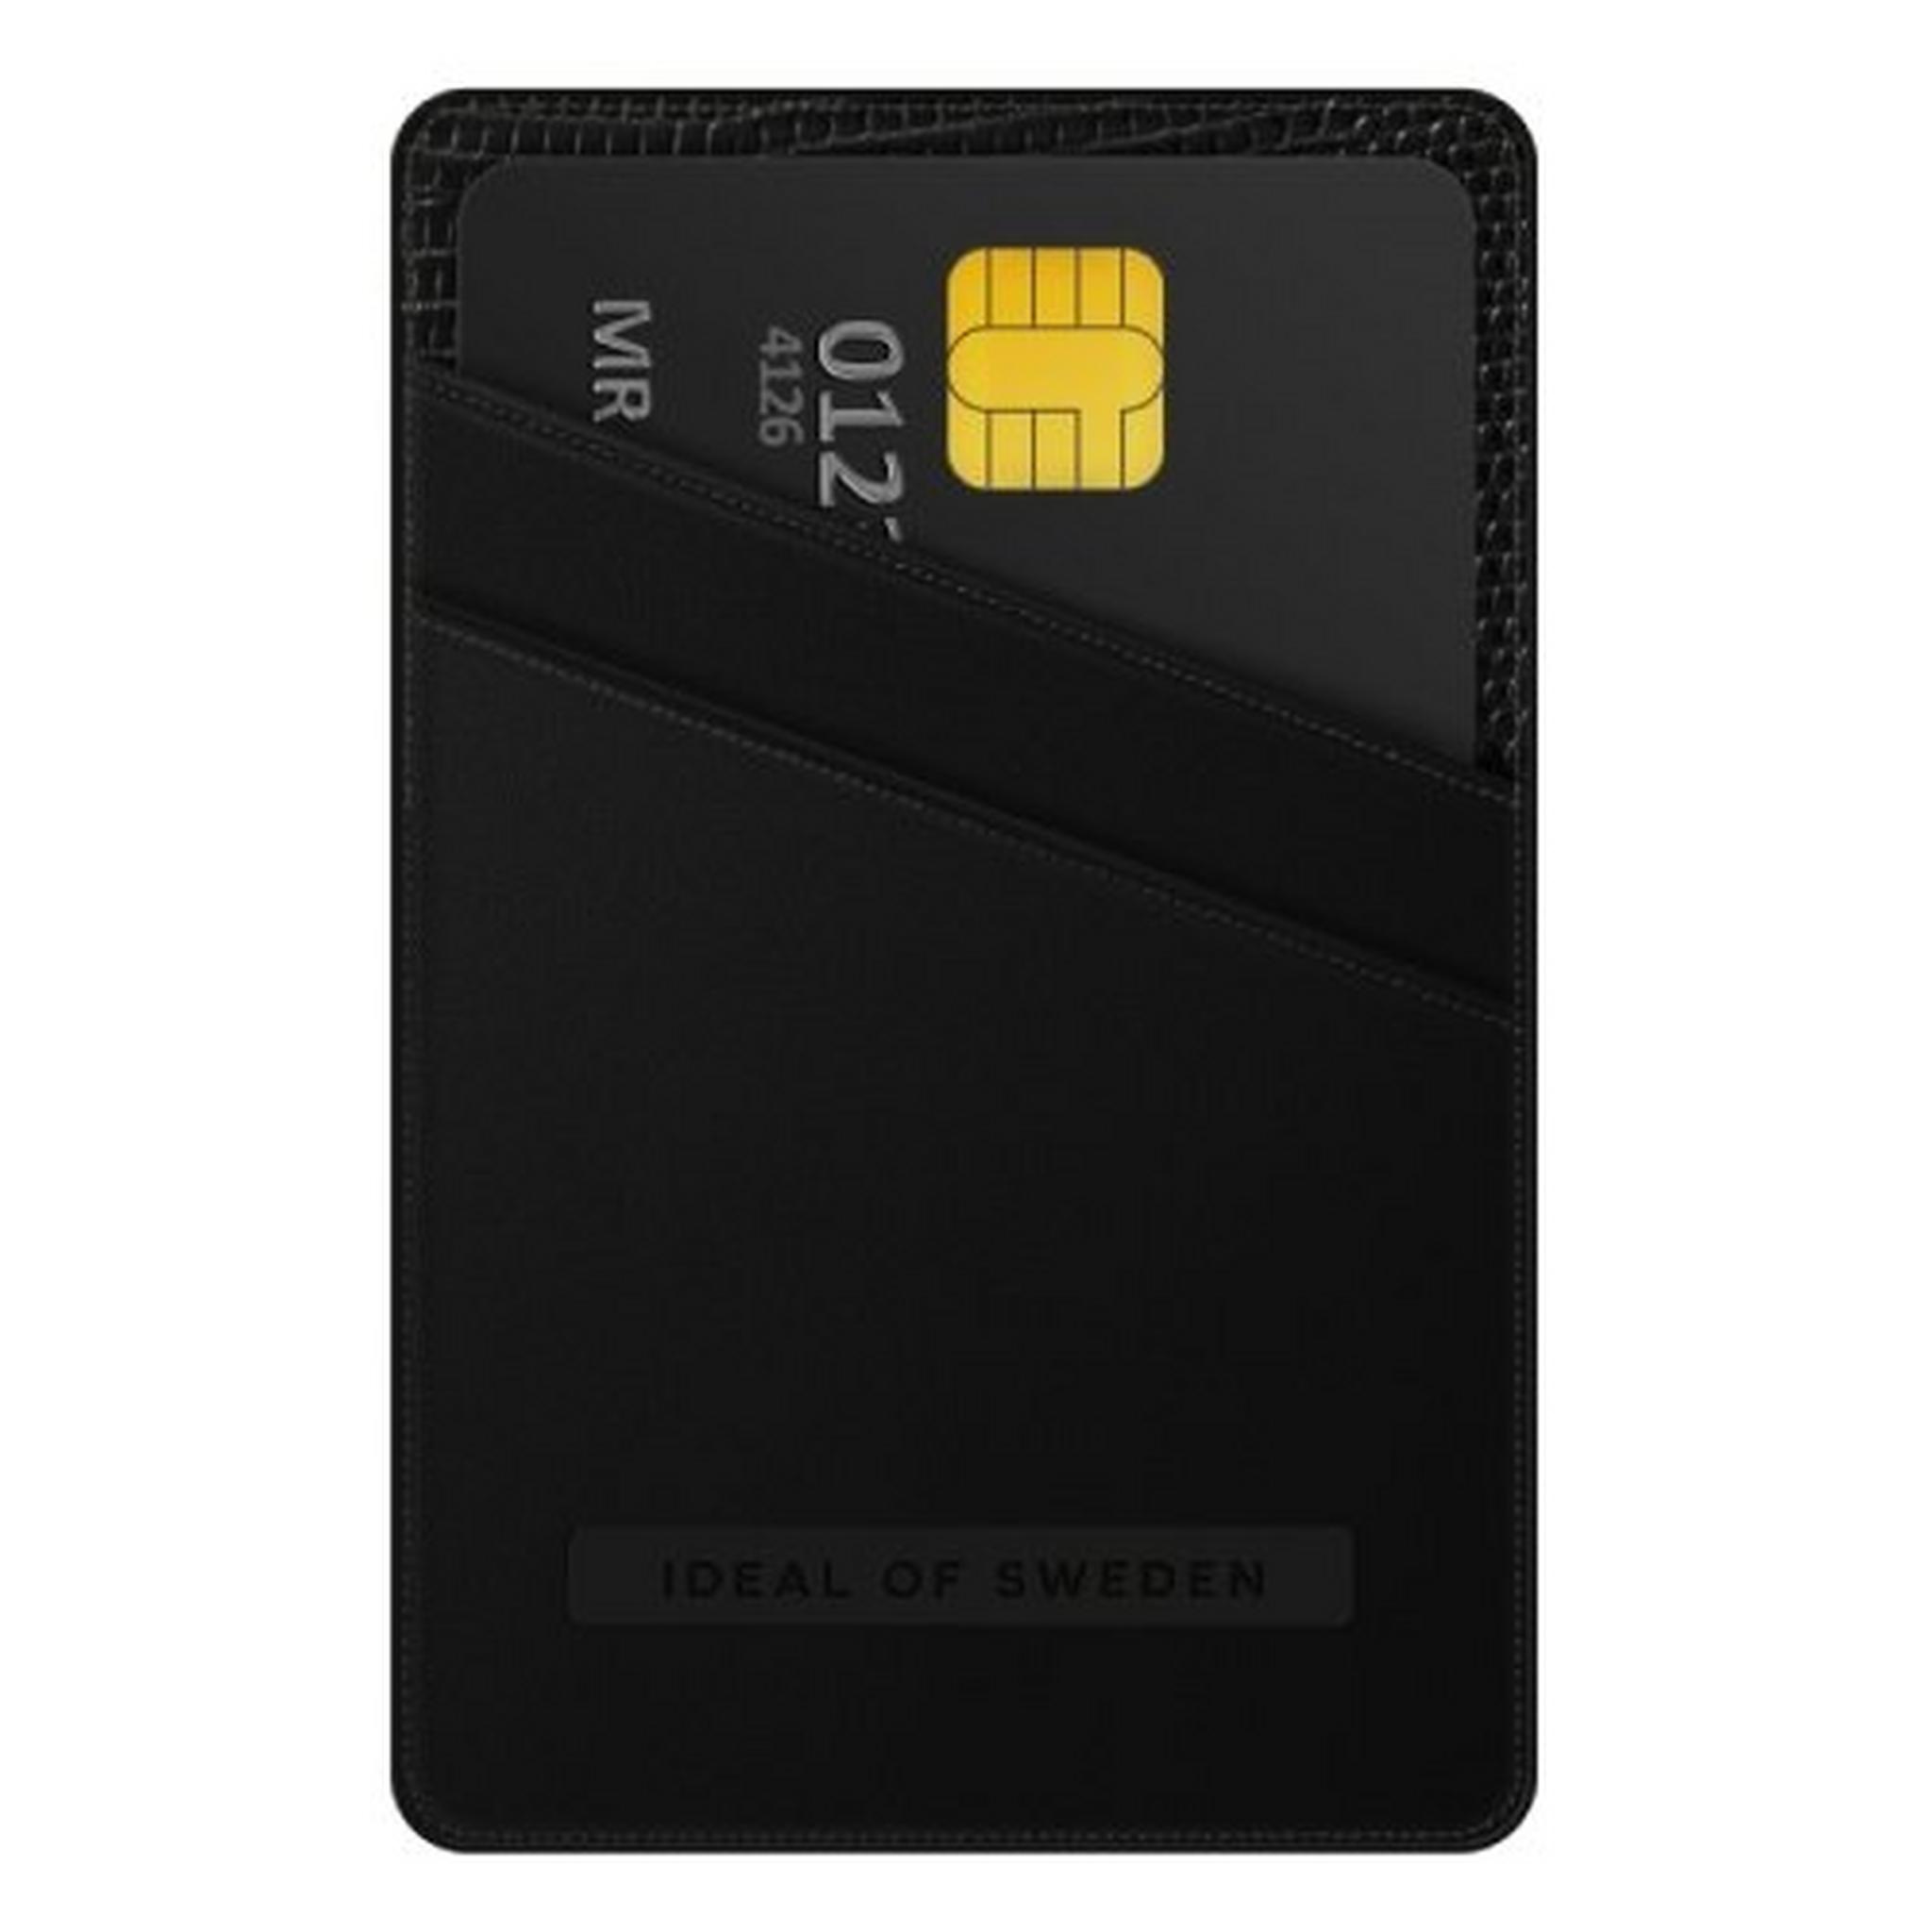 Ideal of Sweden Magnetic Card Holder - Eagle Black